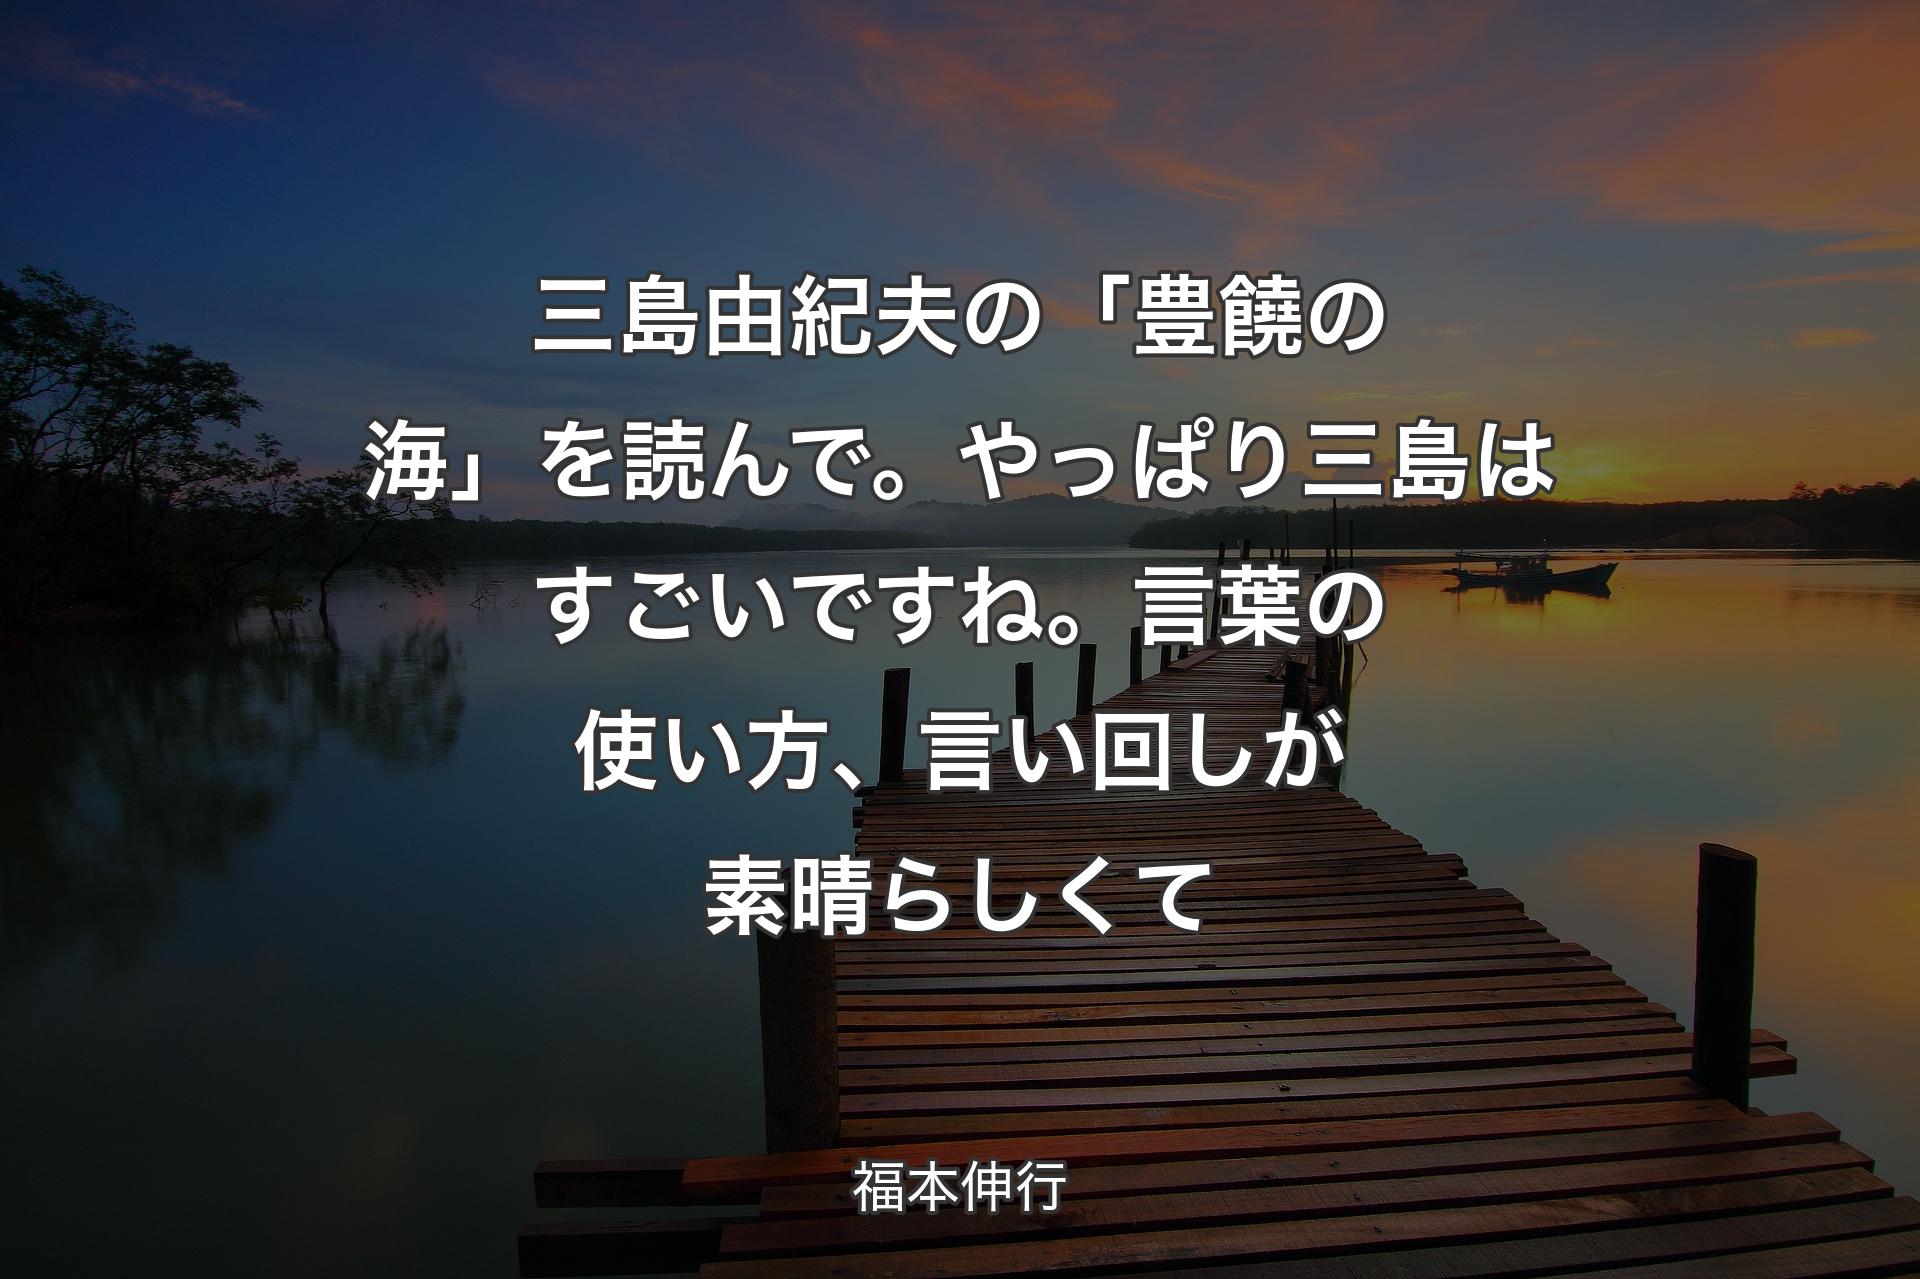 【背景3】三島由紀夫の「豊饒の海」を読んで。やっぱり三島はすごいですね。言葉の使い方、言い回しが素晴らしくて - 福本伸行